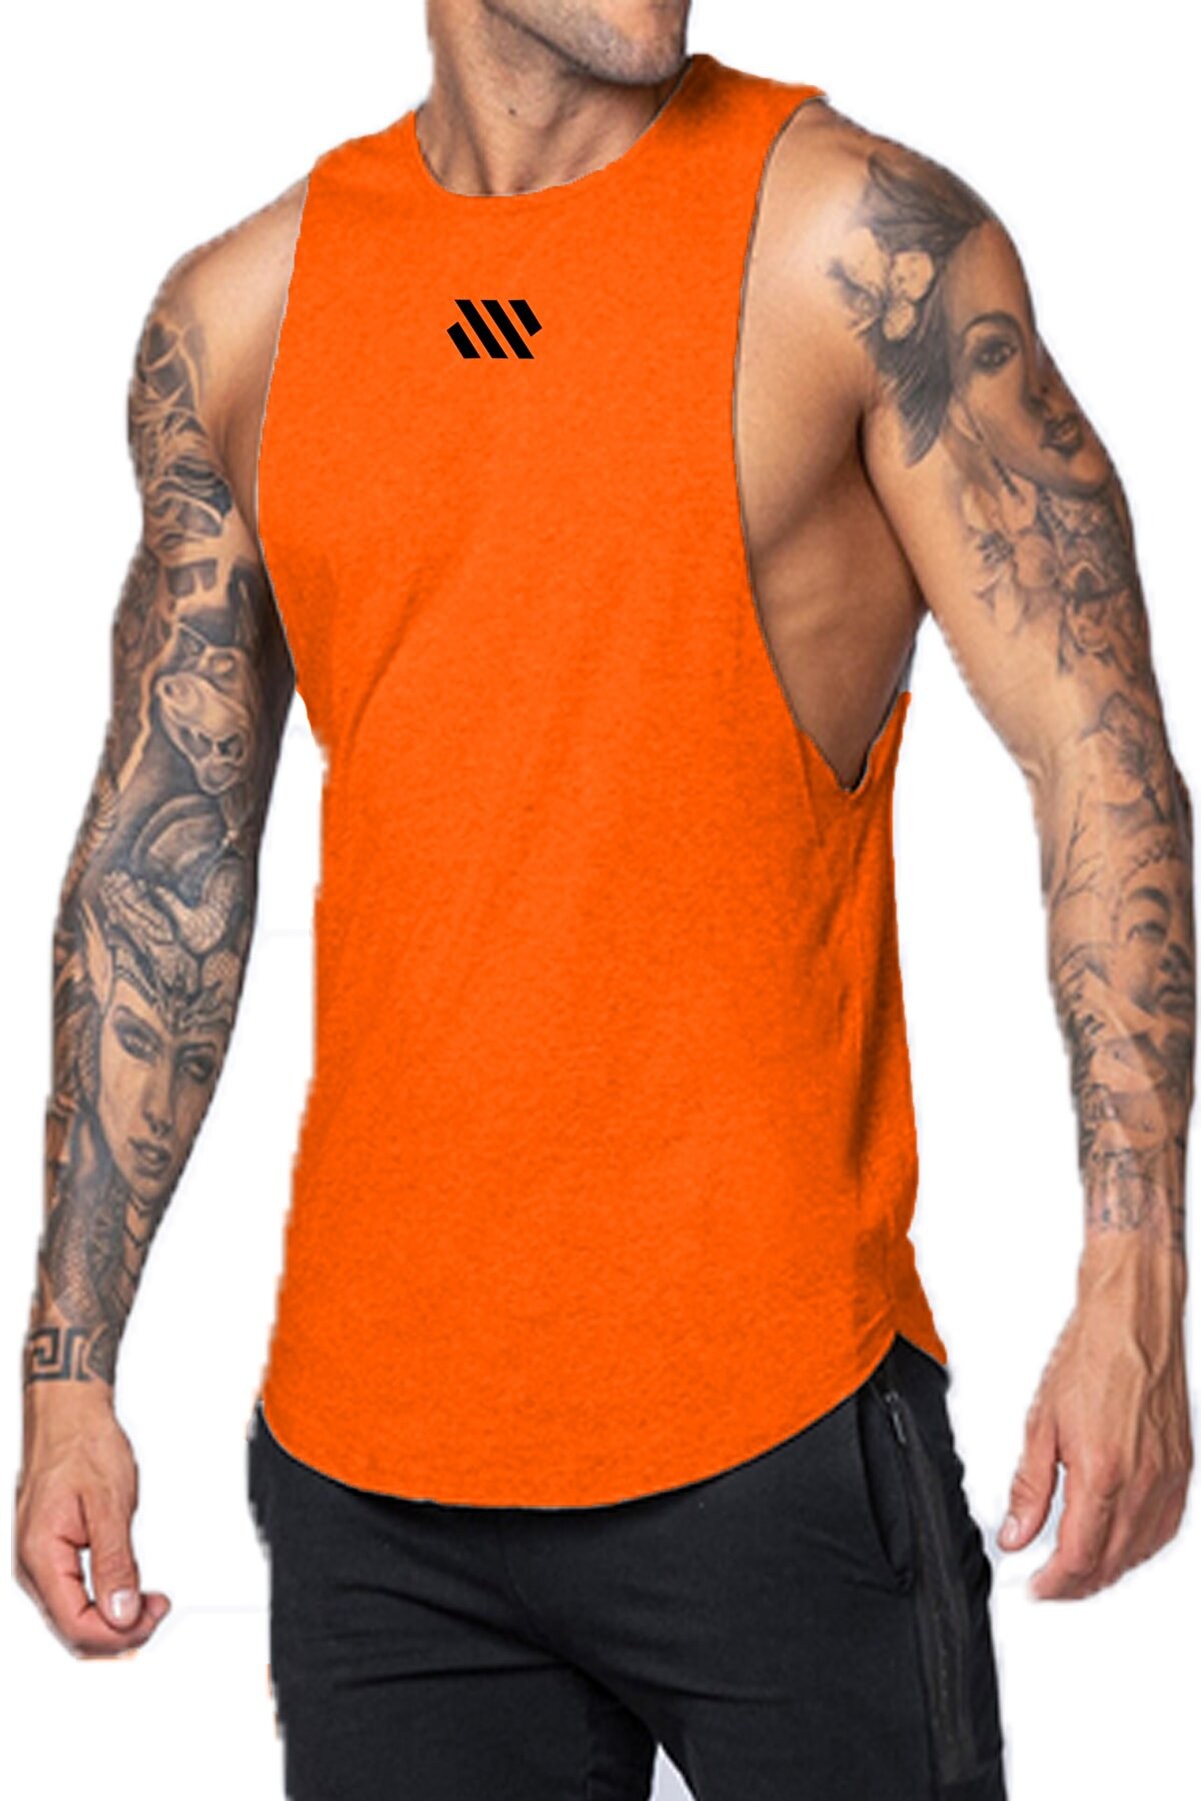 Ghassy Co. Erkek Dry Fit Gym Workout Stringer Fitness Spor Atlet Tshirt GYM-105 - TURUNCU